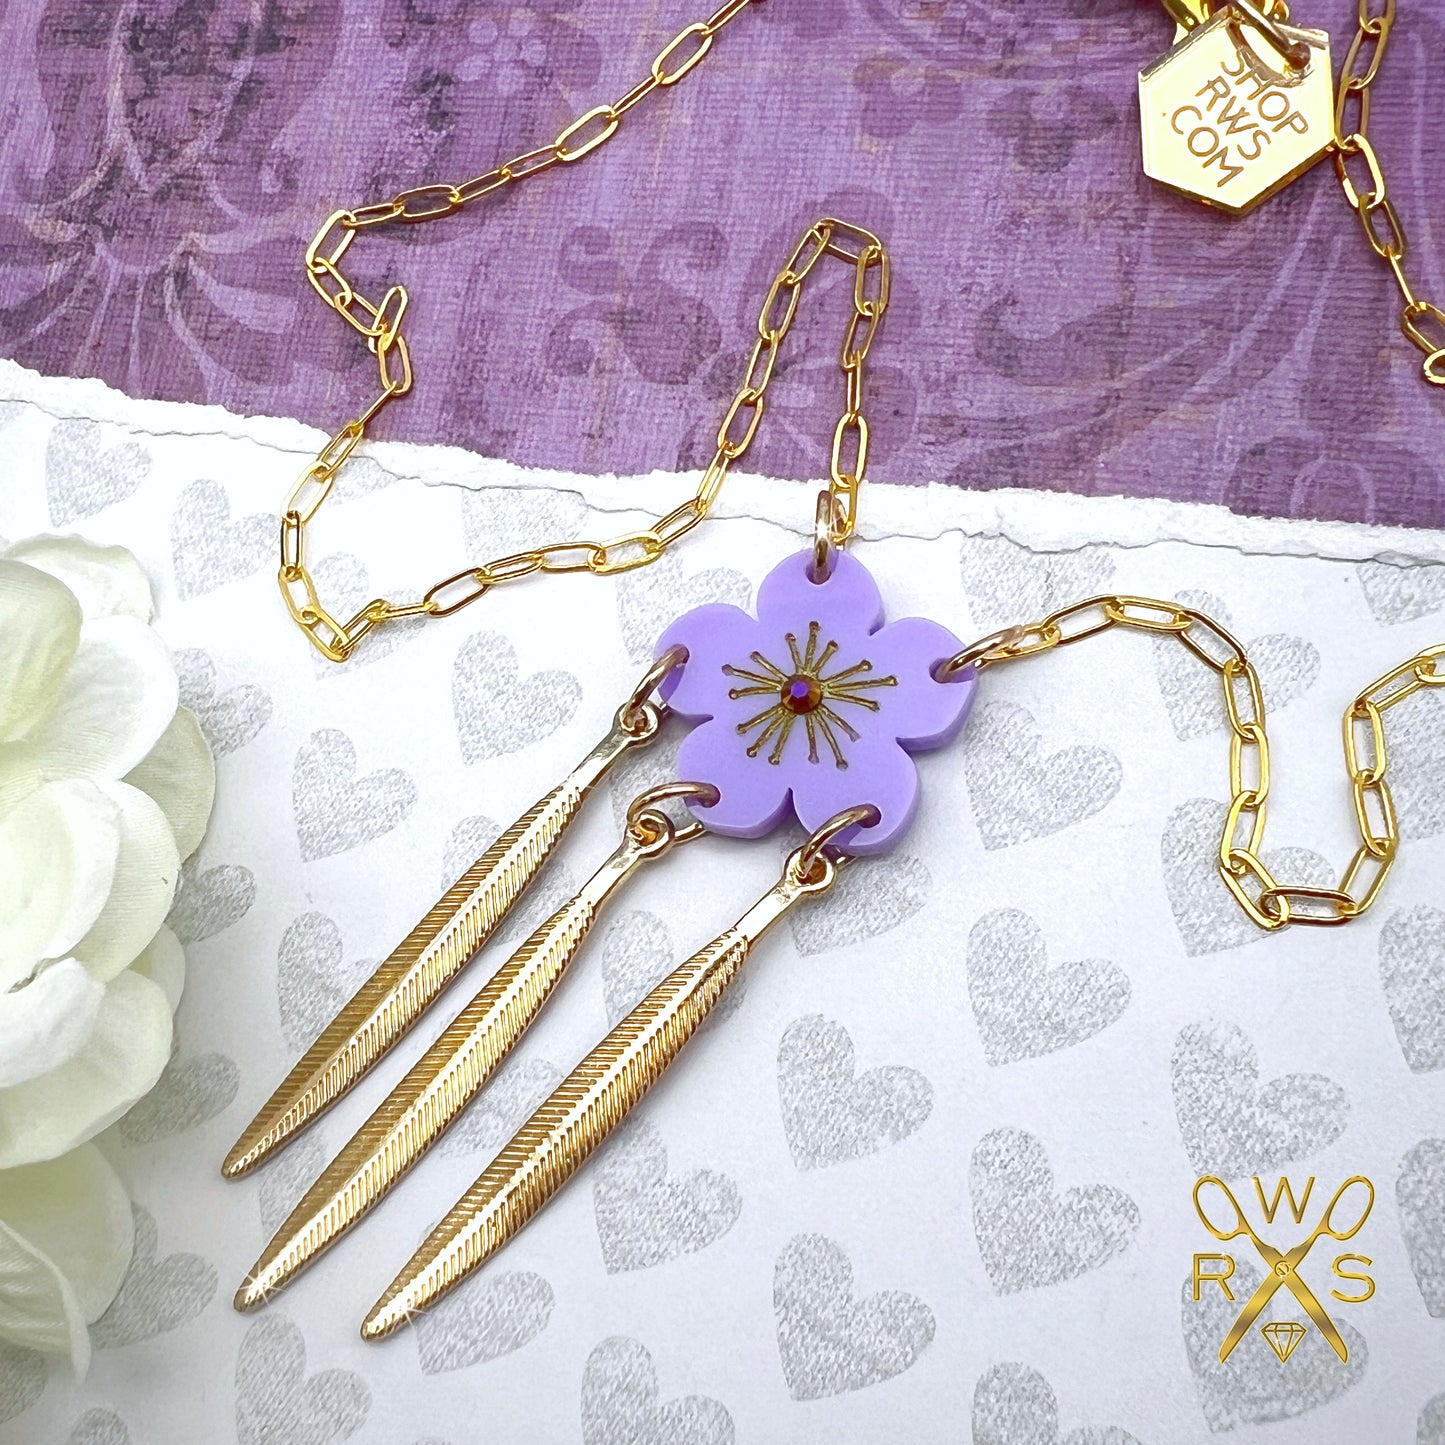 Gilded Leaf Necklace in Lavender